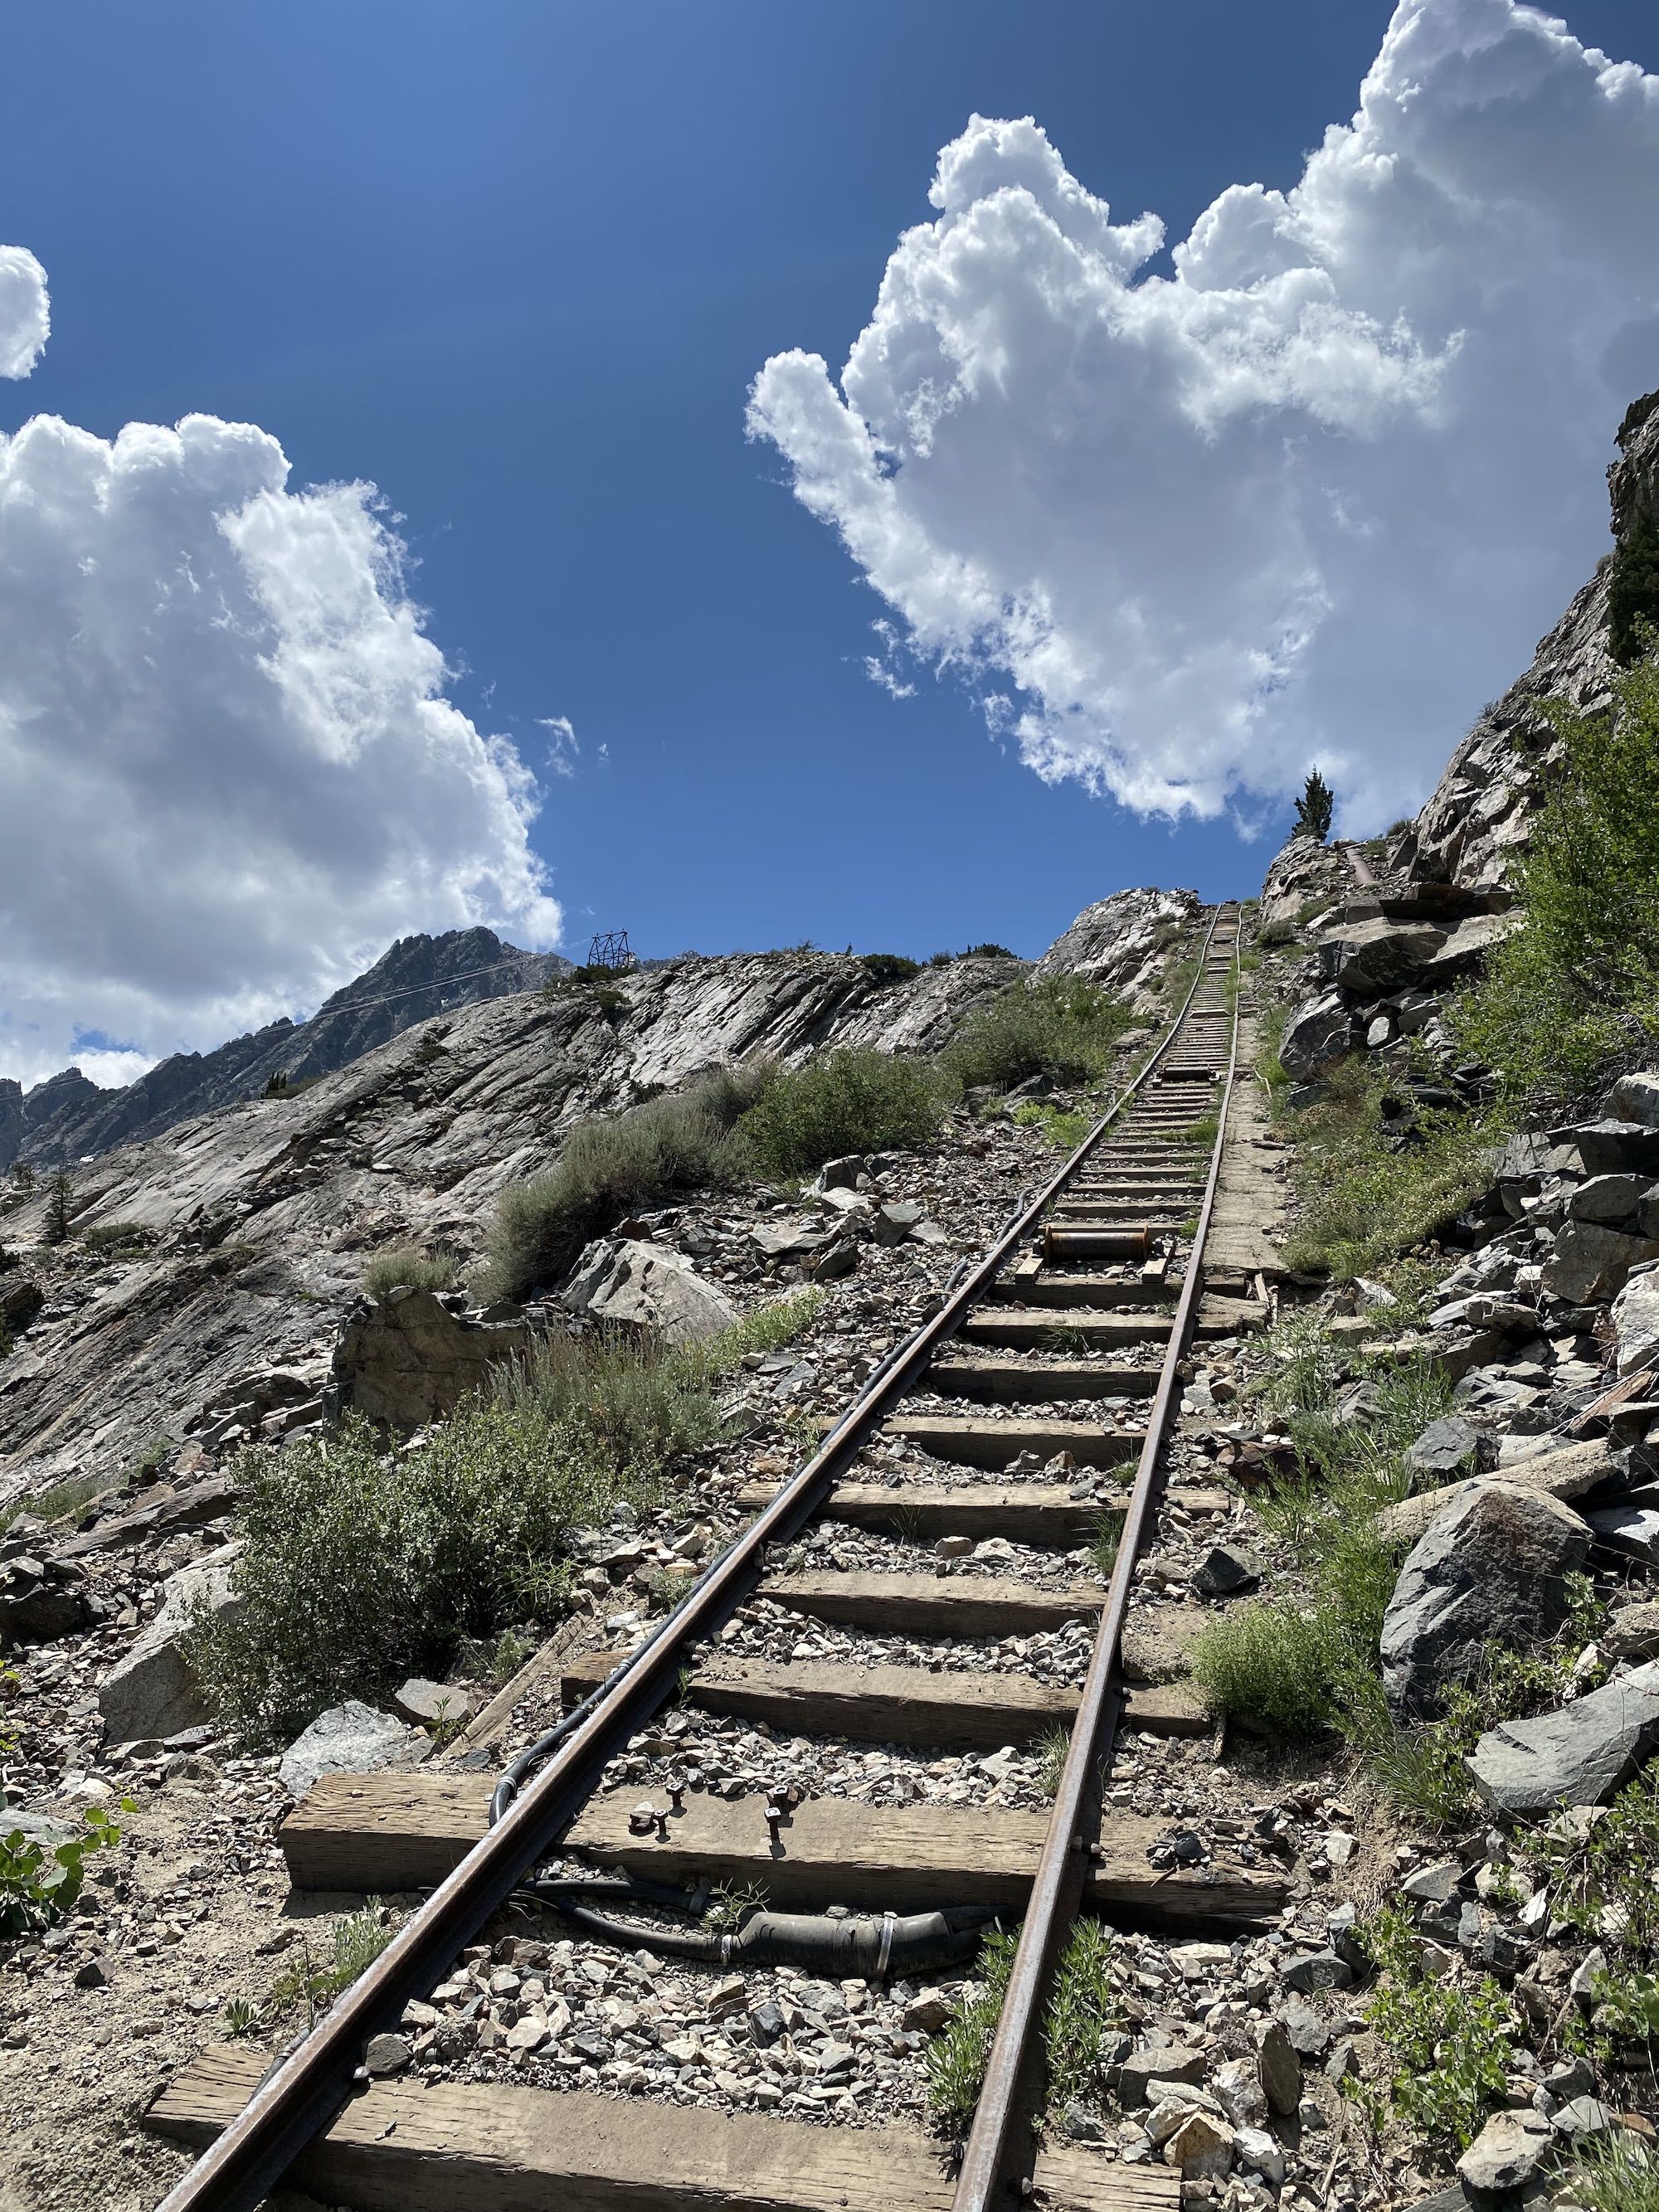 Railroad tracks up a steep hill